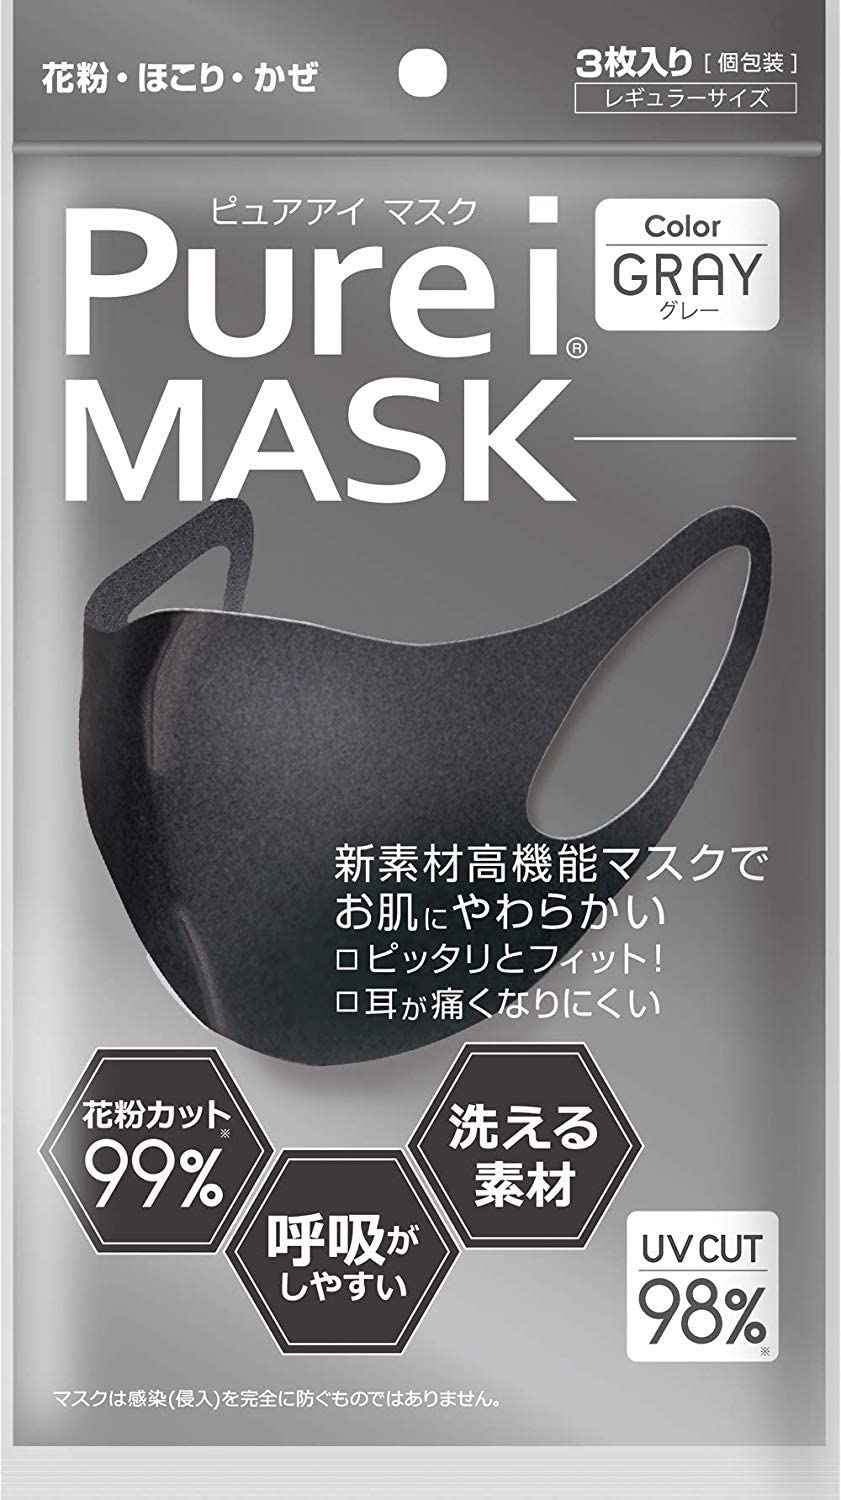 Многоразовая антибактериальная маска Purei Mask серая, 3 шт в упаковке